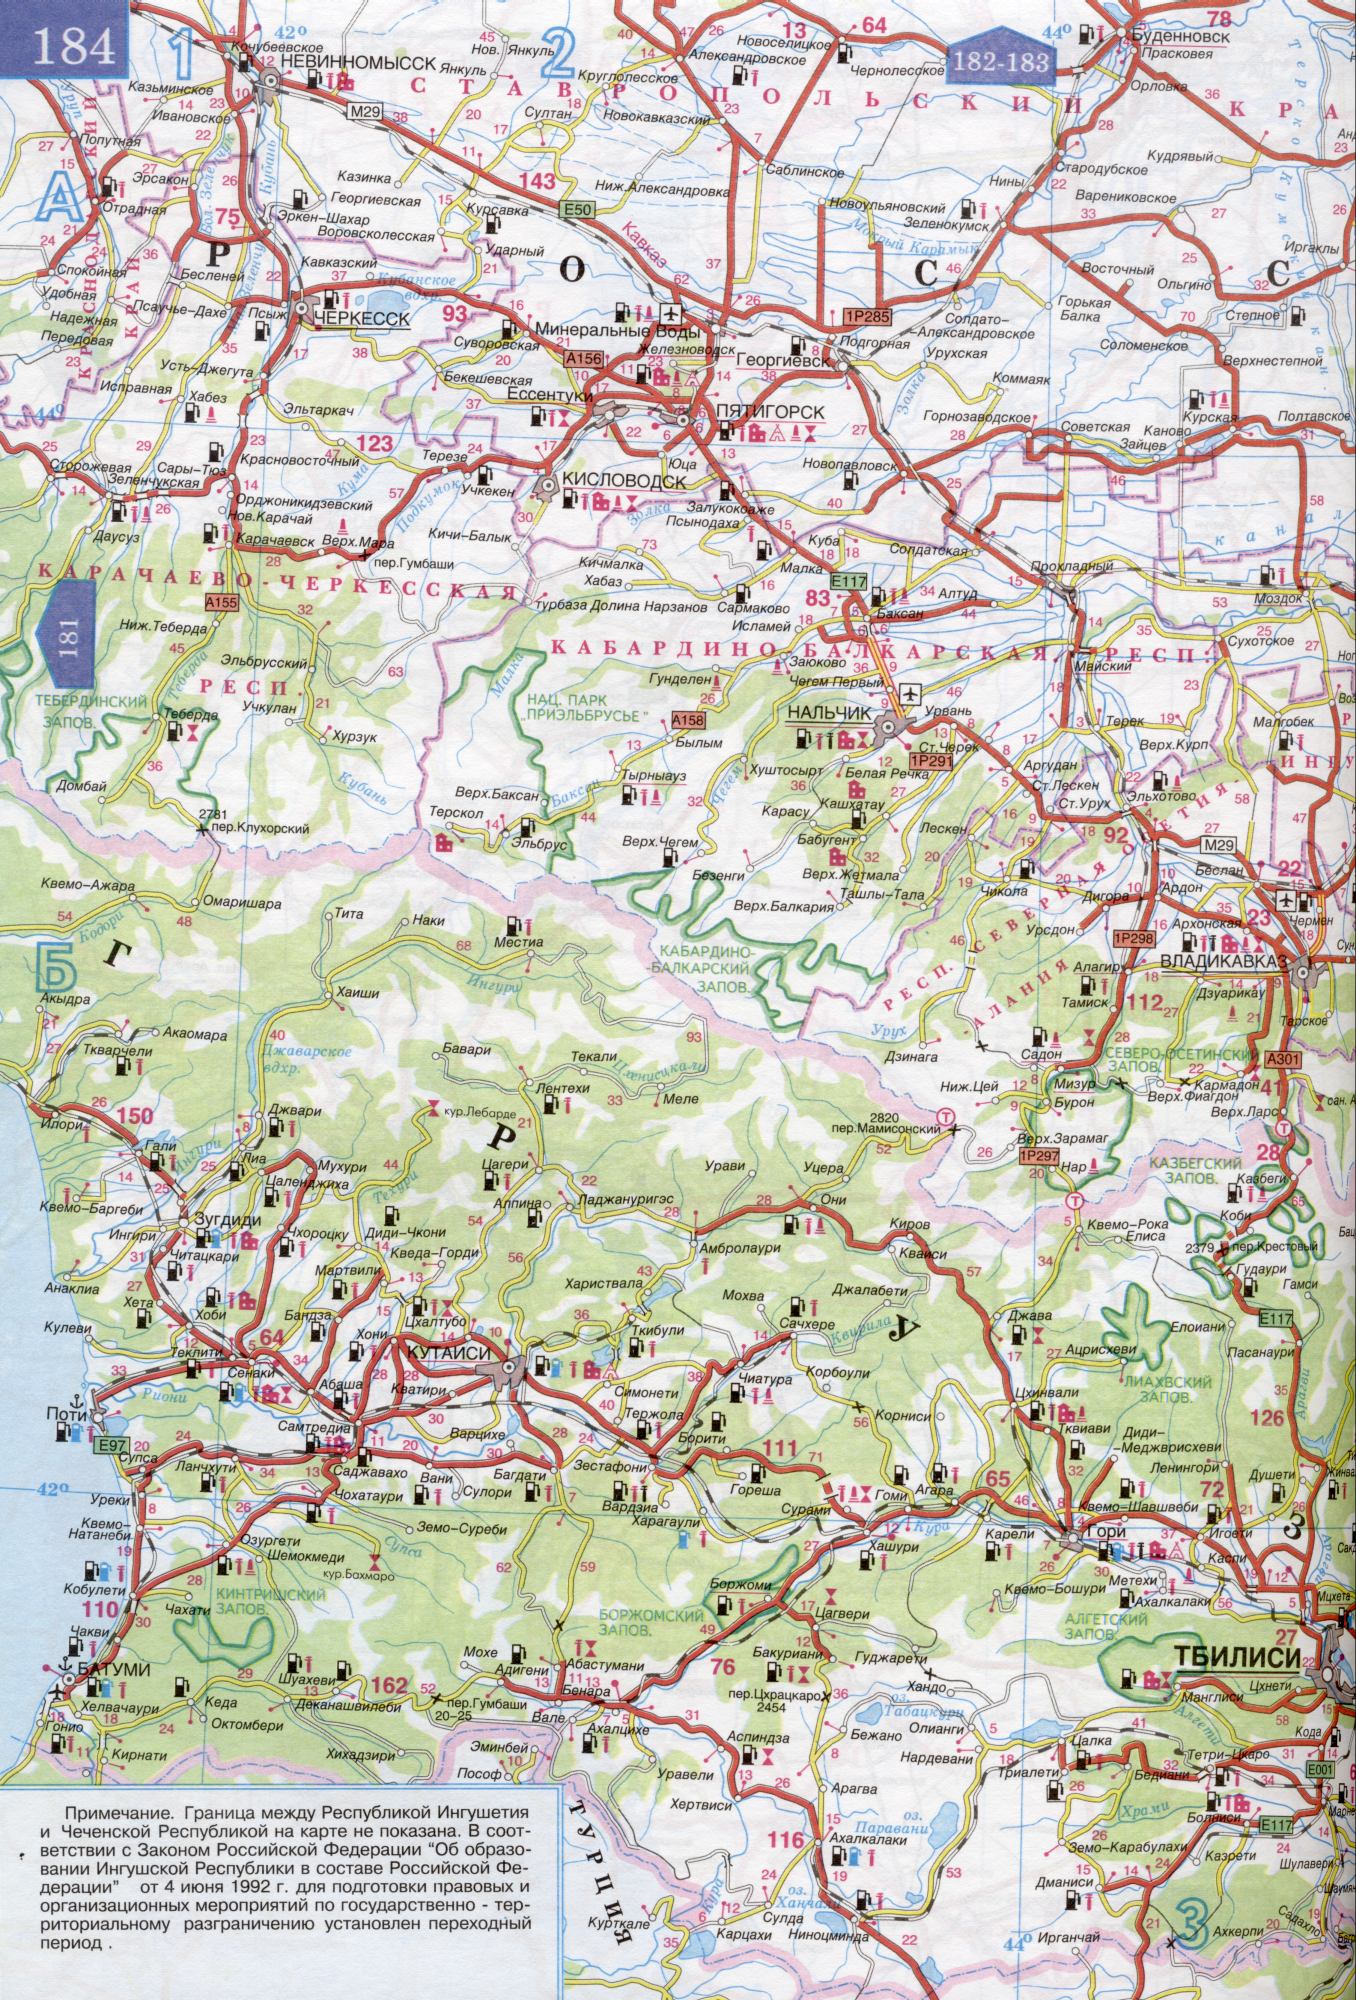 Карта карачаево черкесии подробная с городами и селами и дорогами